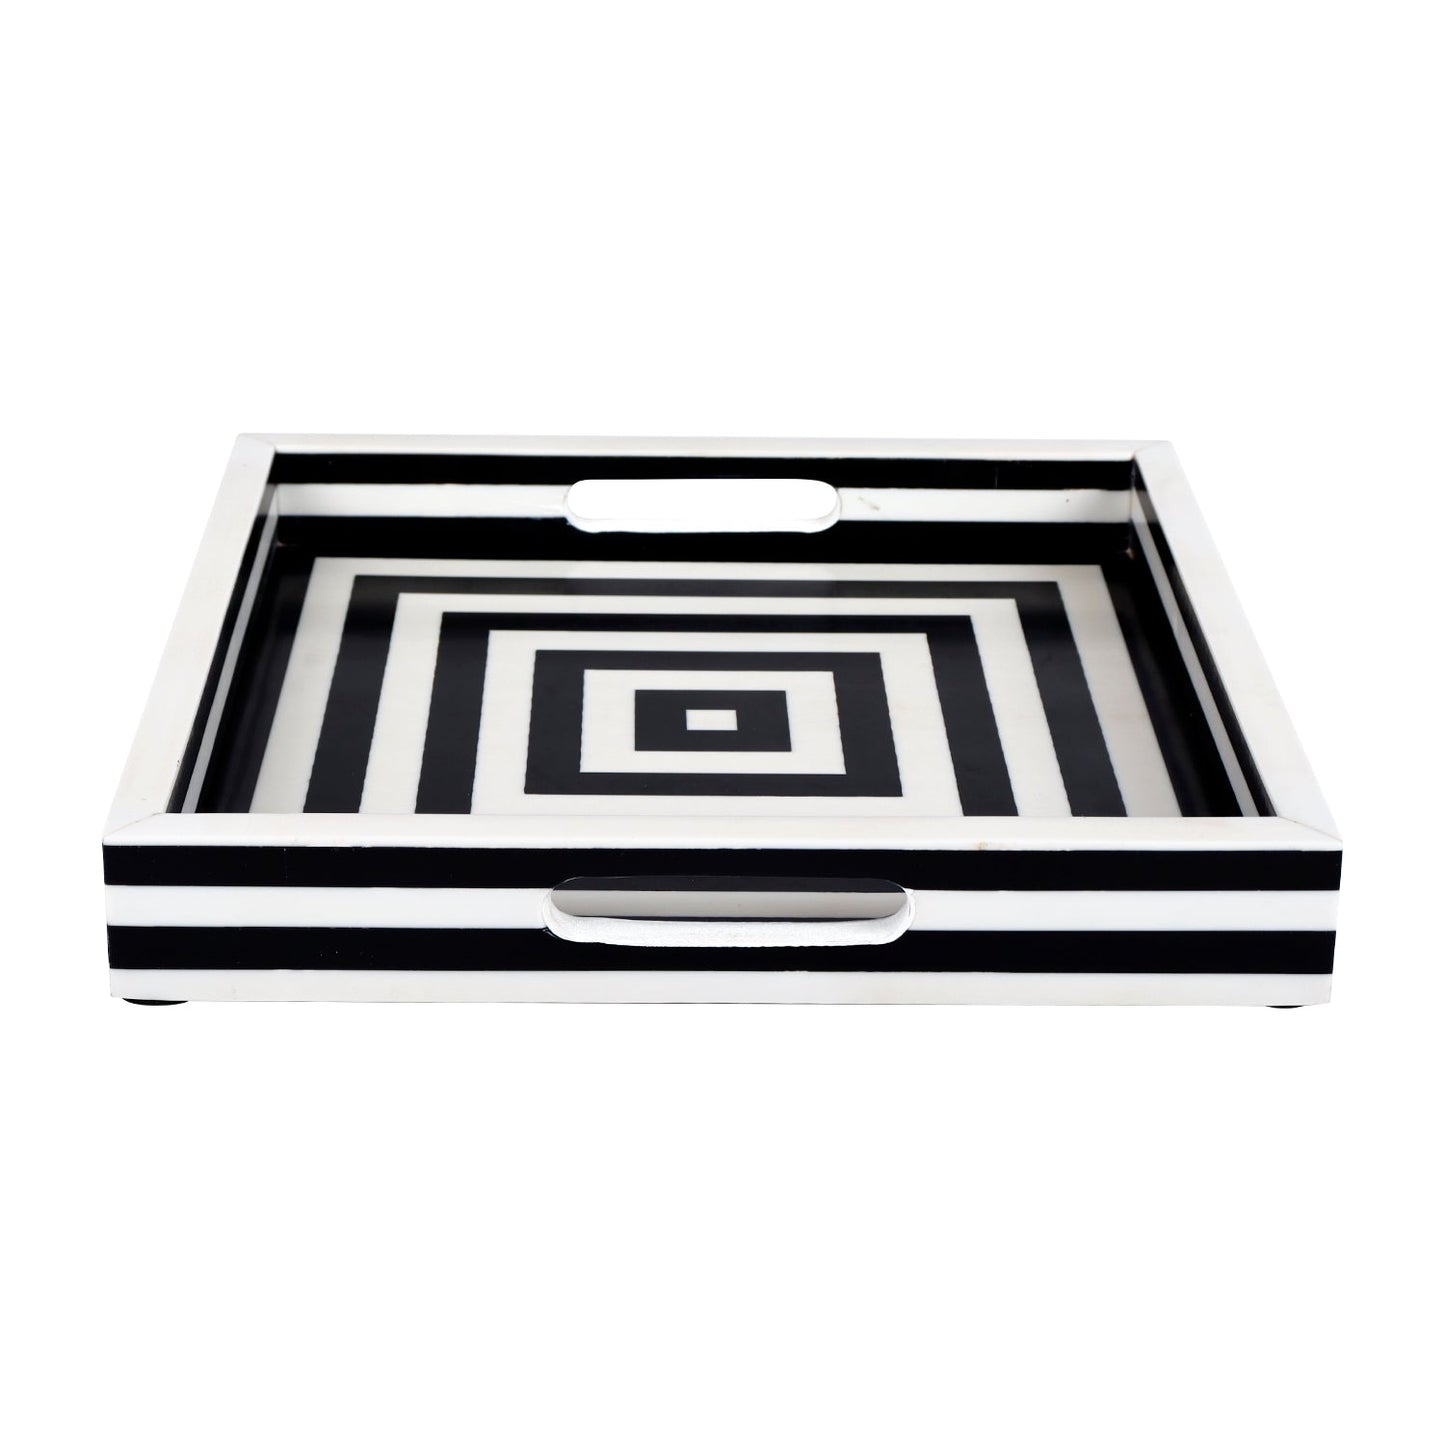 Decorative Tray Concentrics Black & White 12x12 inch